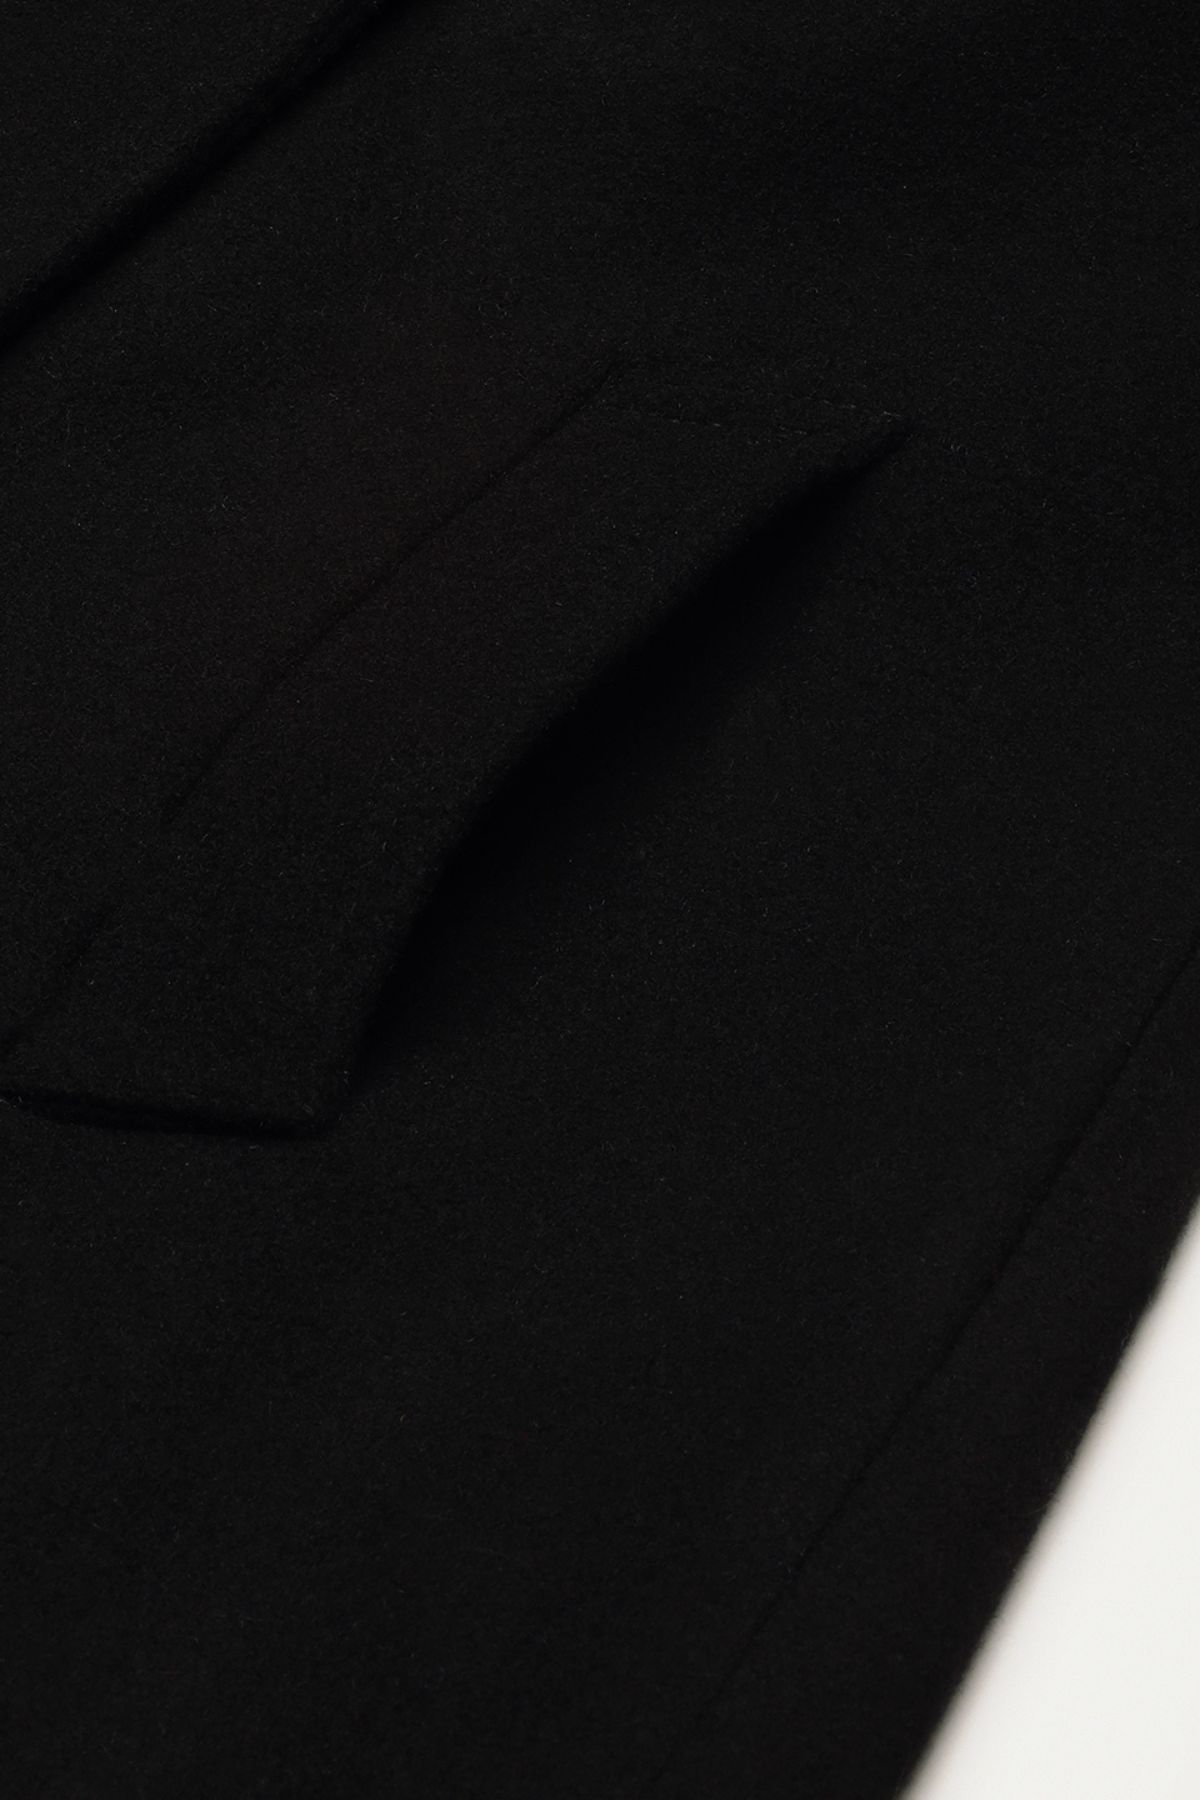 Black Woollen Trench Coat | Women